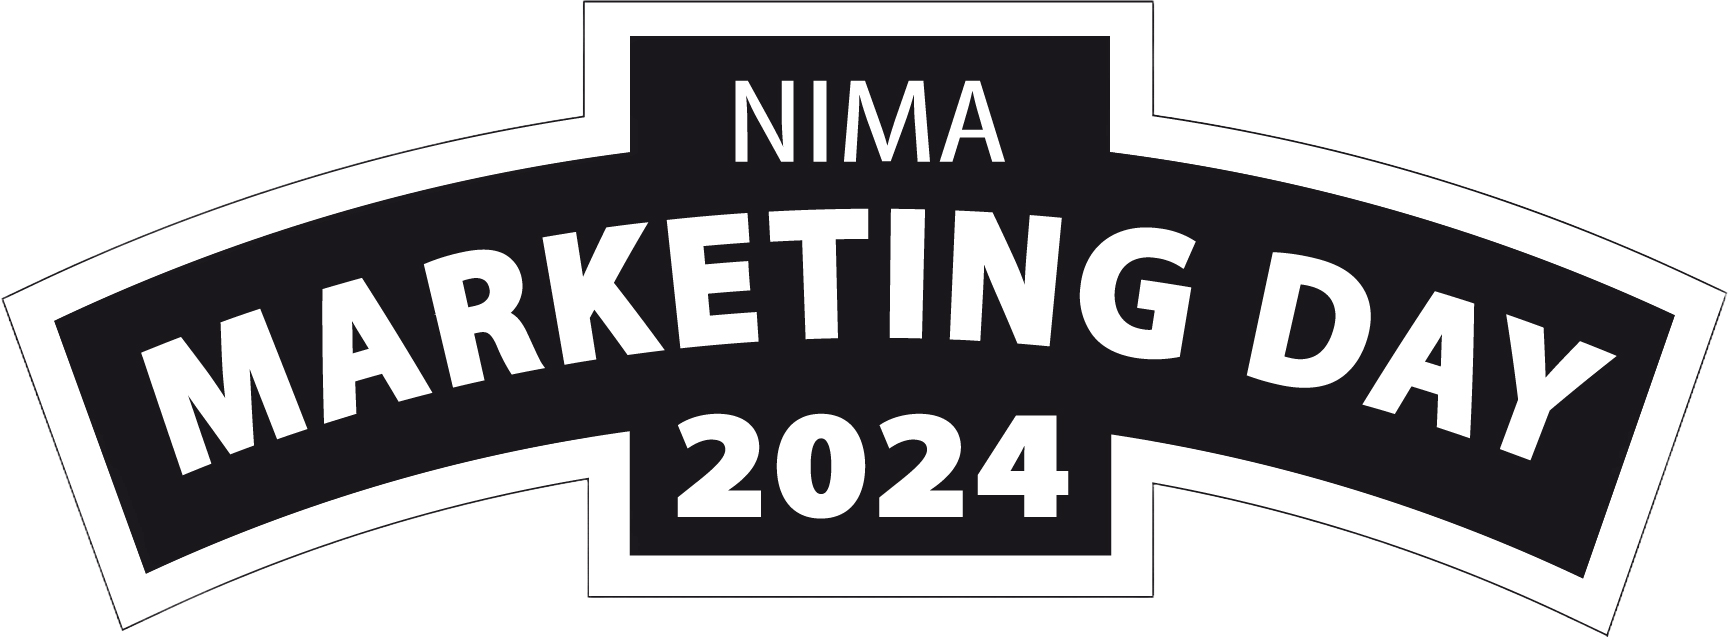 Nima Marketing Day 2024